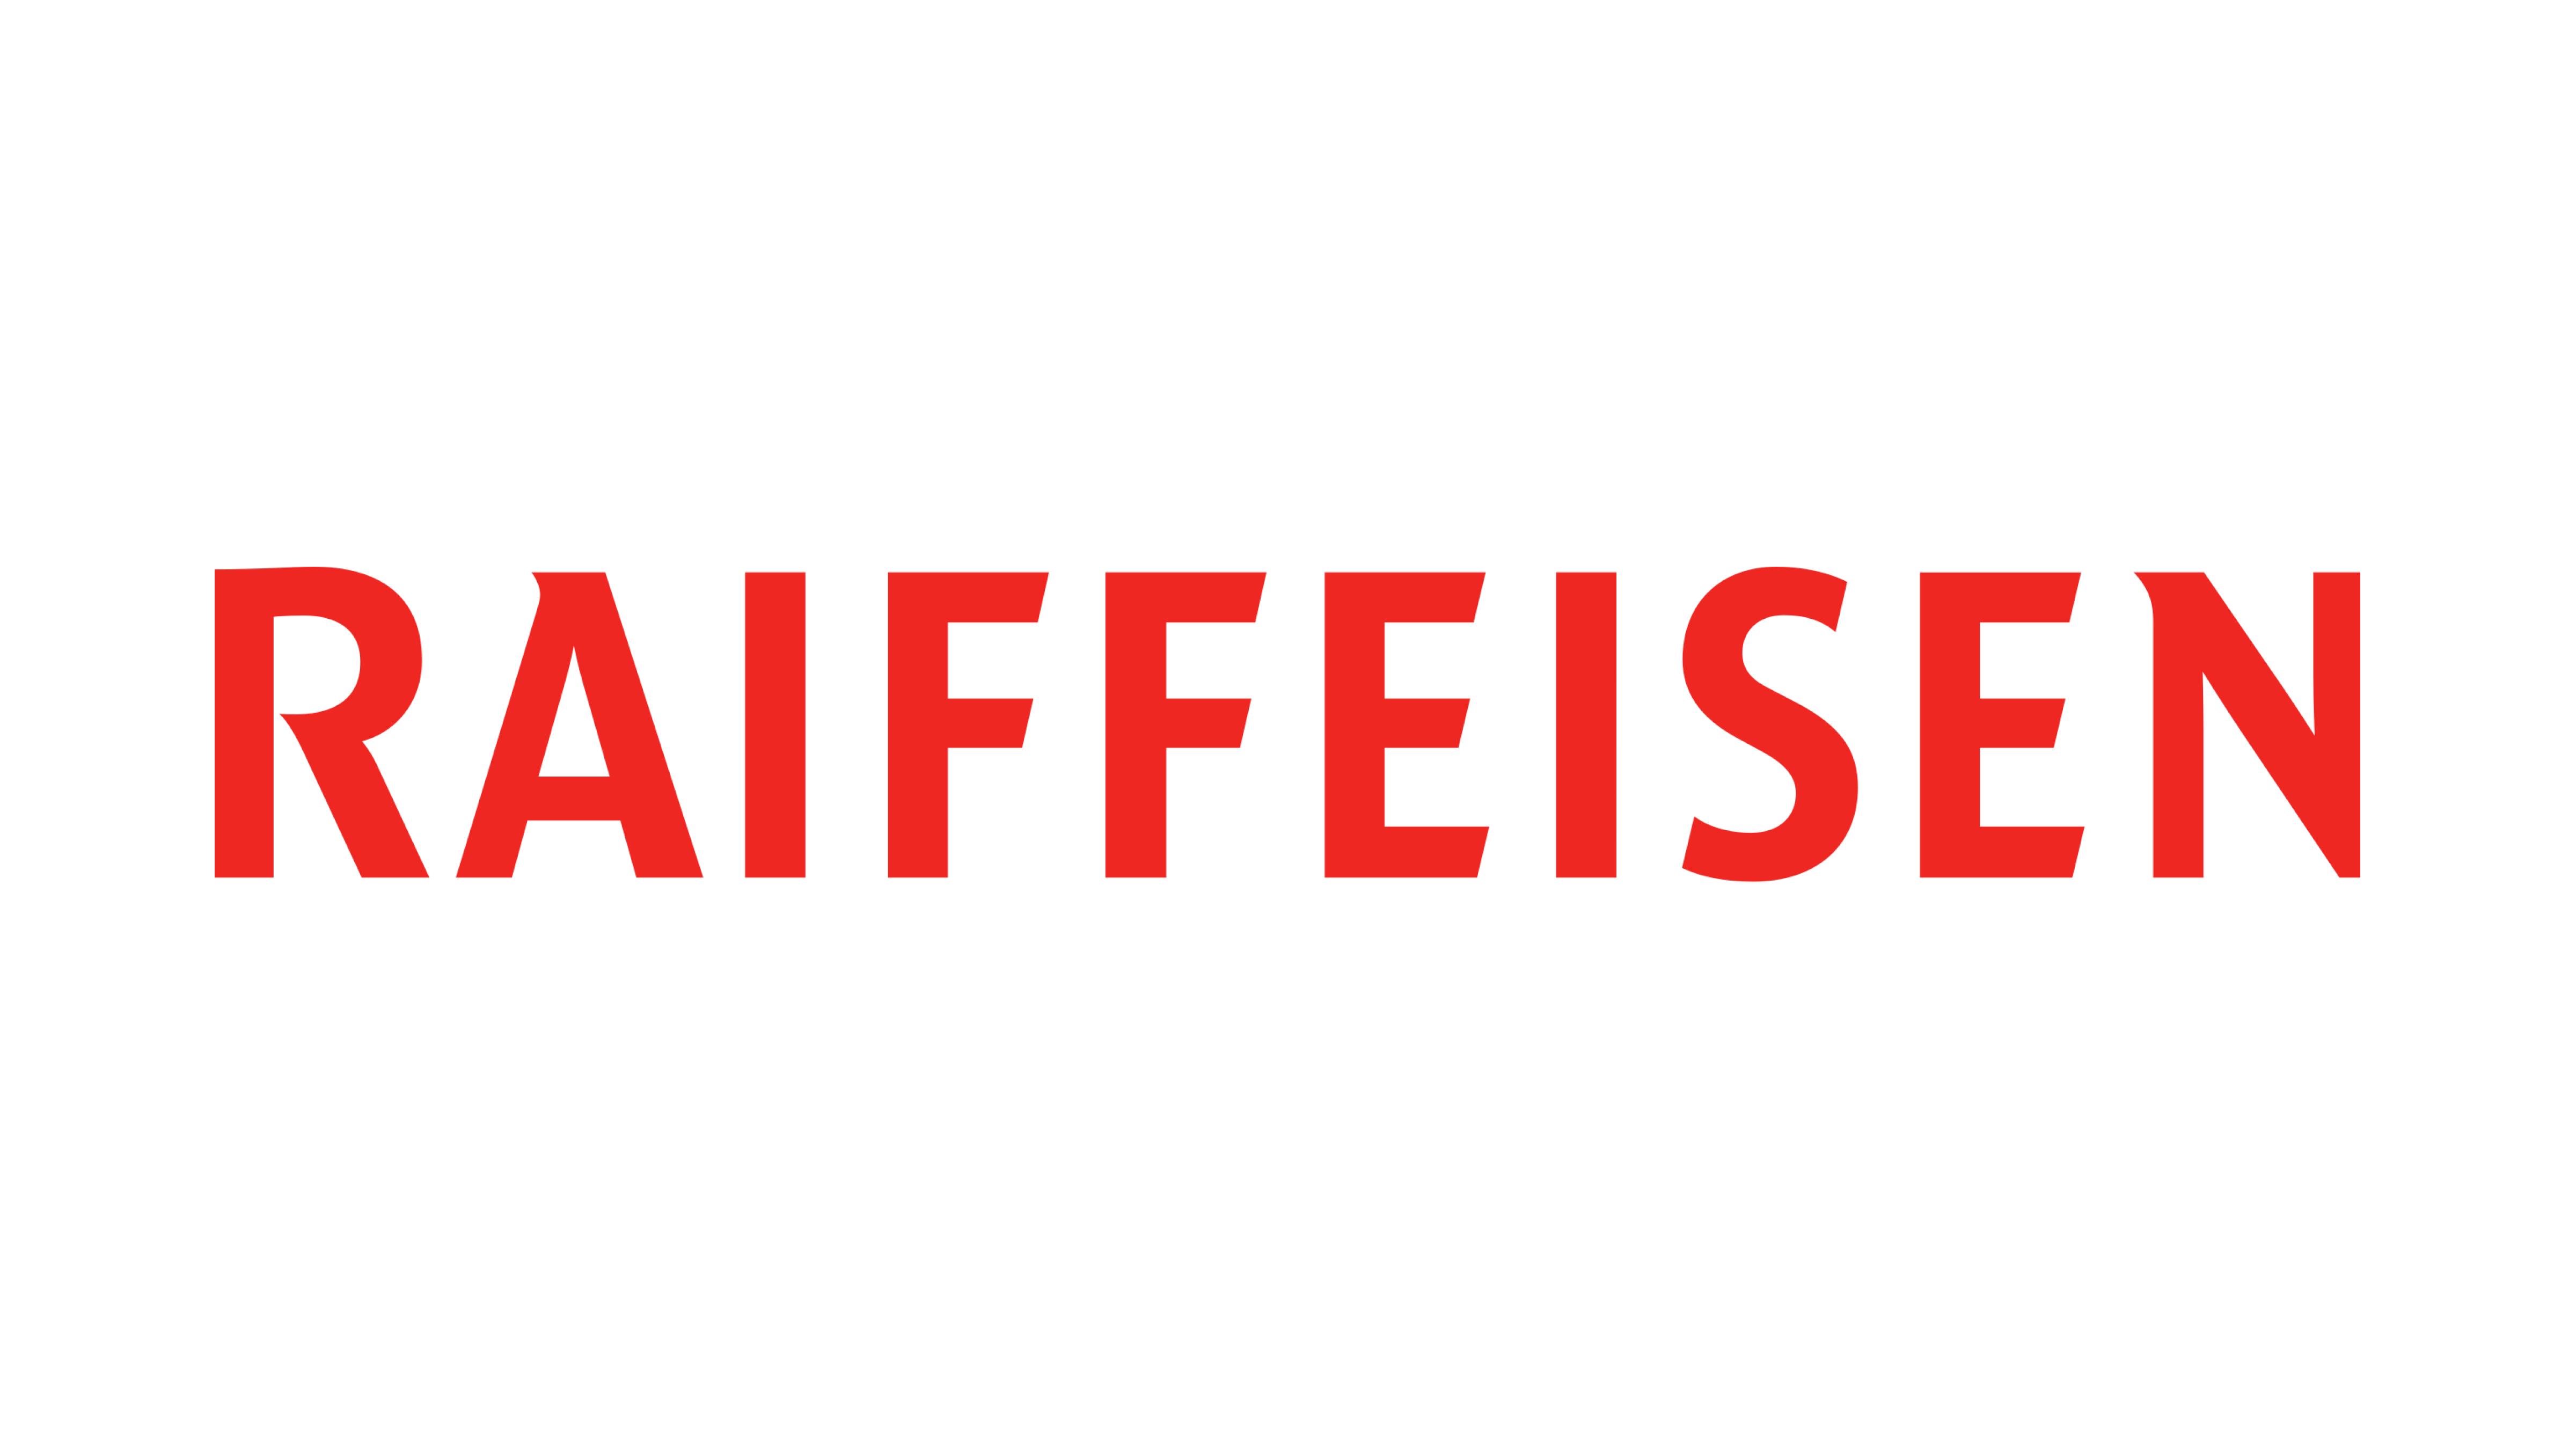 Raiffeisen Bank Logo